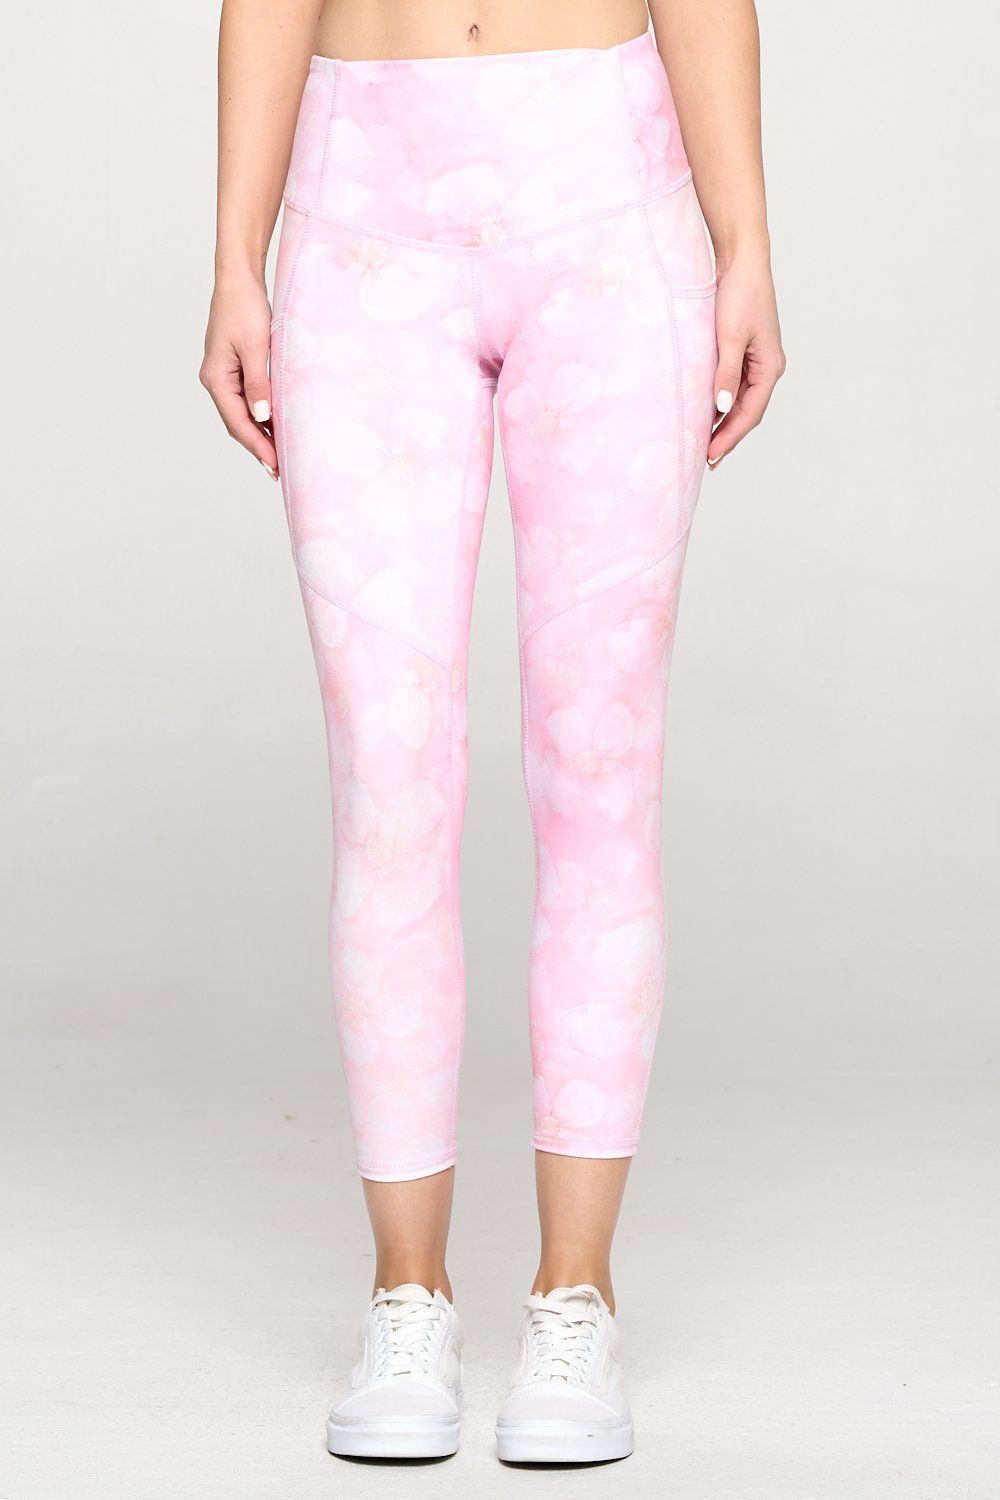 Liz - Pink Marble Floral w Pockets 7/8 Legging - FINAL SALE